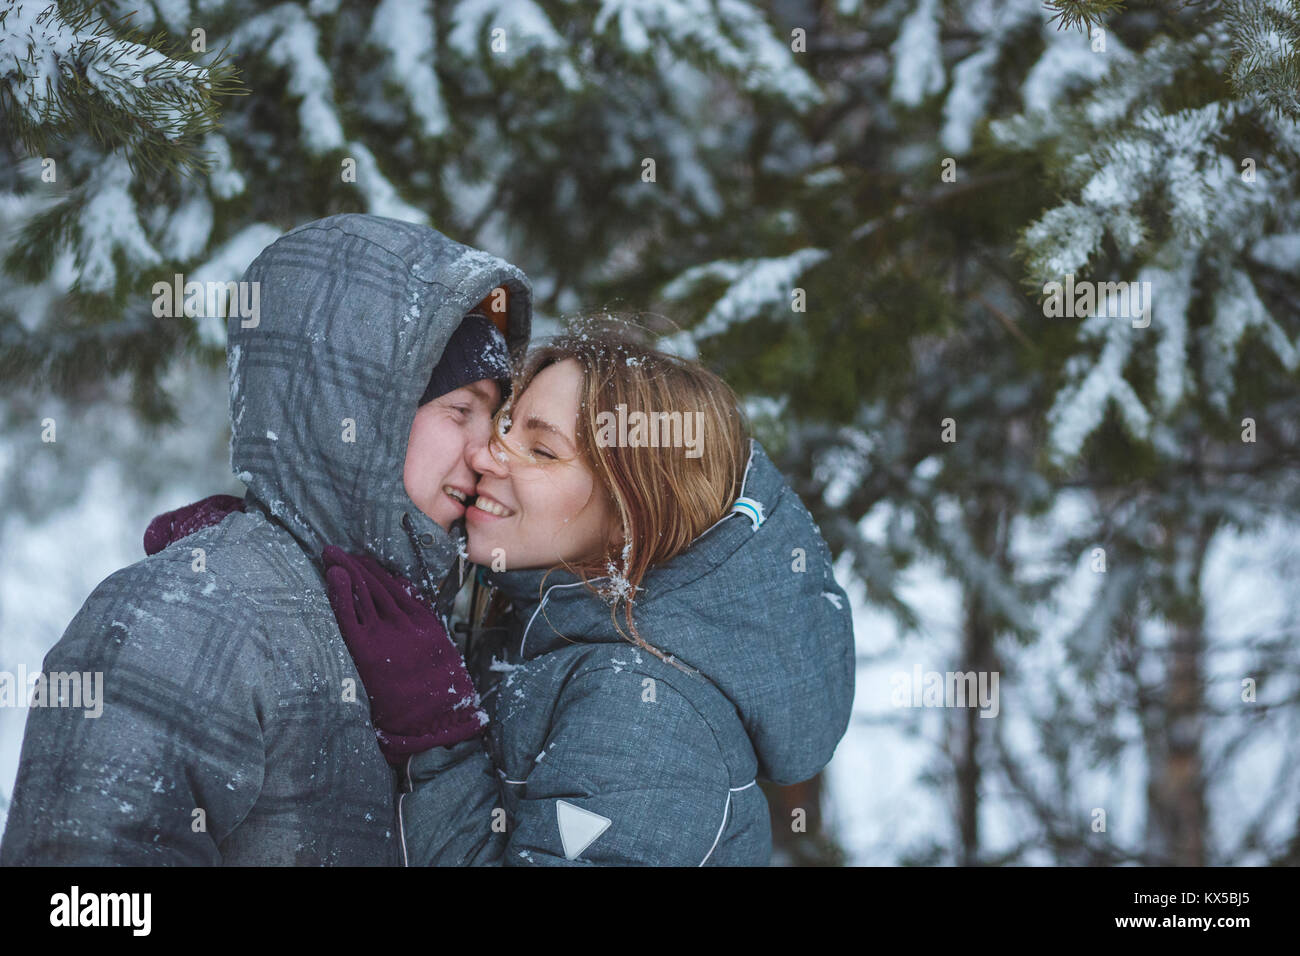 Gerne Schnee paar Küssen unter Tannenzweigen im Winter Wald. Konzept gesunde romantischen Urlaub an der frischen Luft Stockfoto